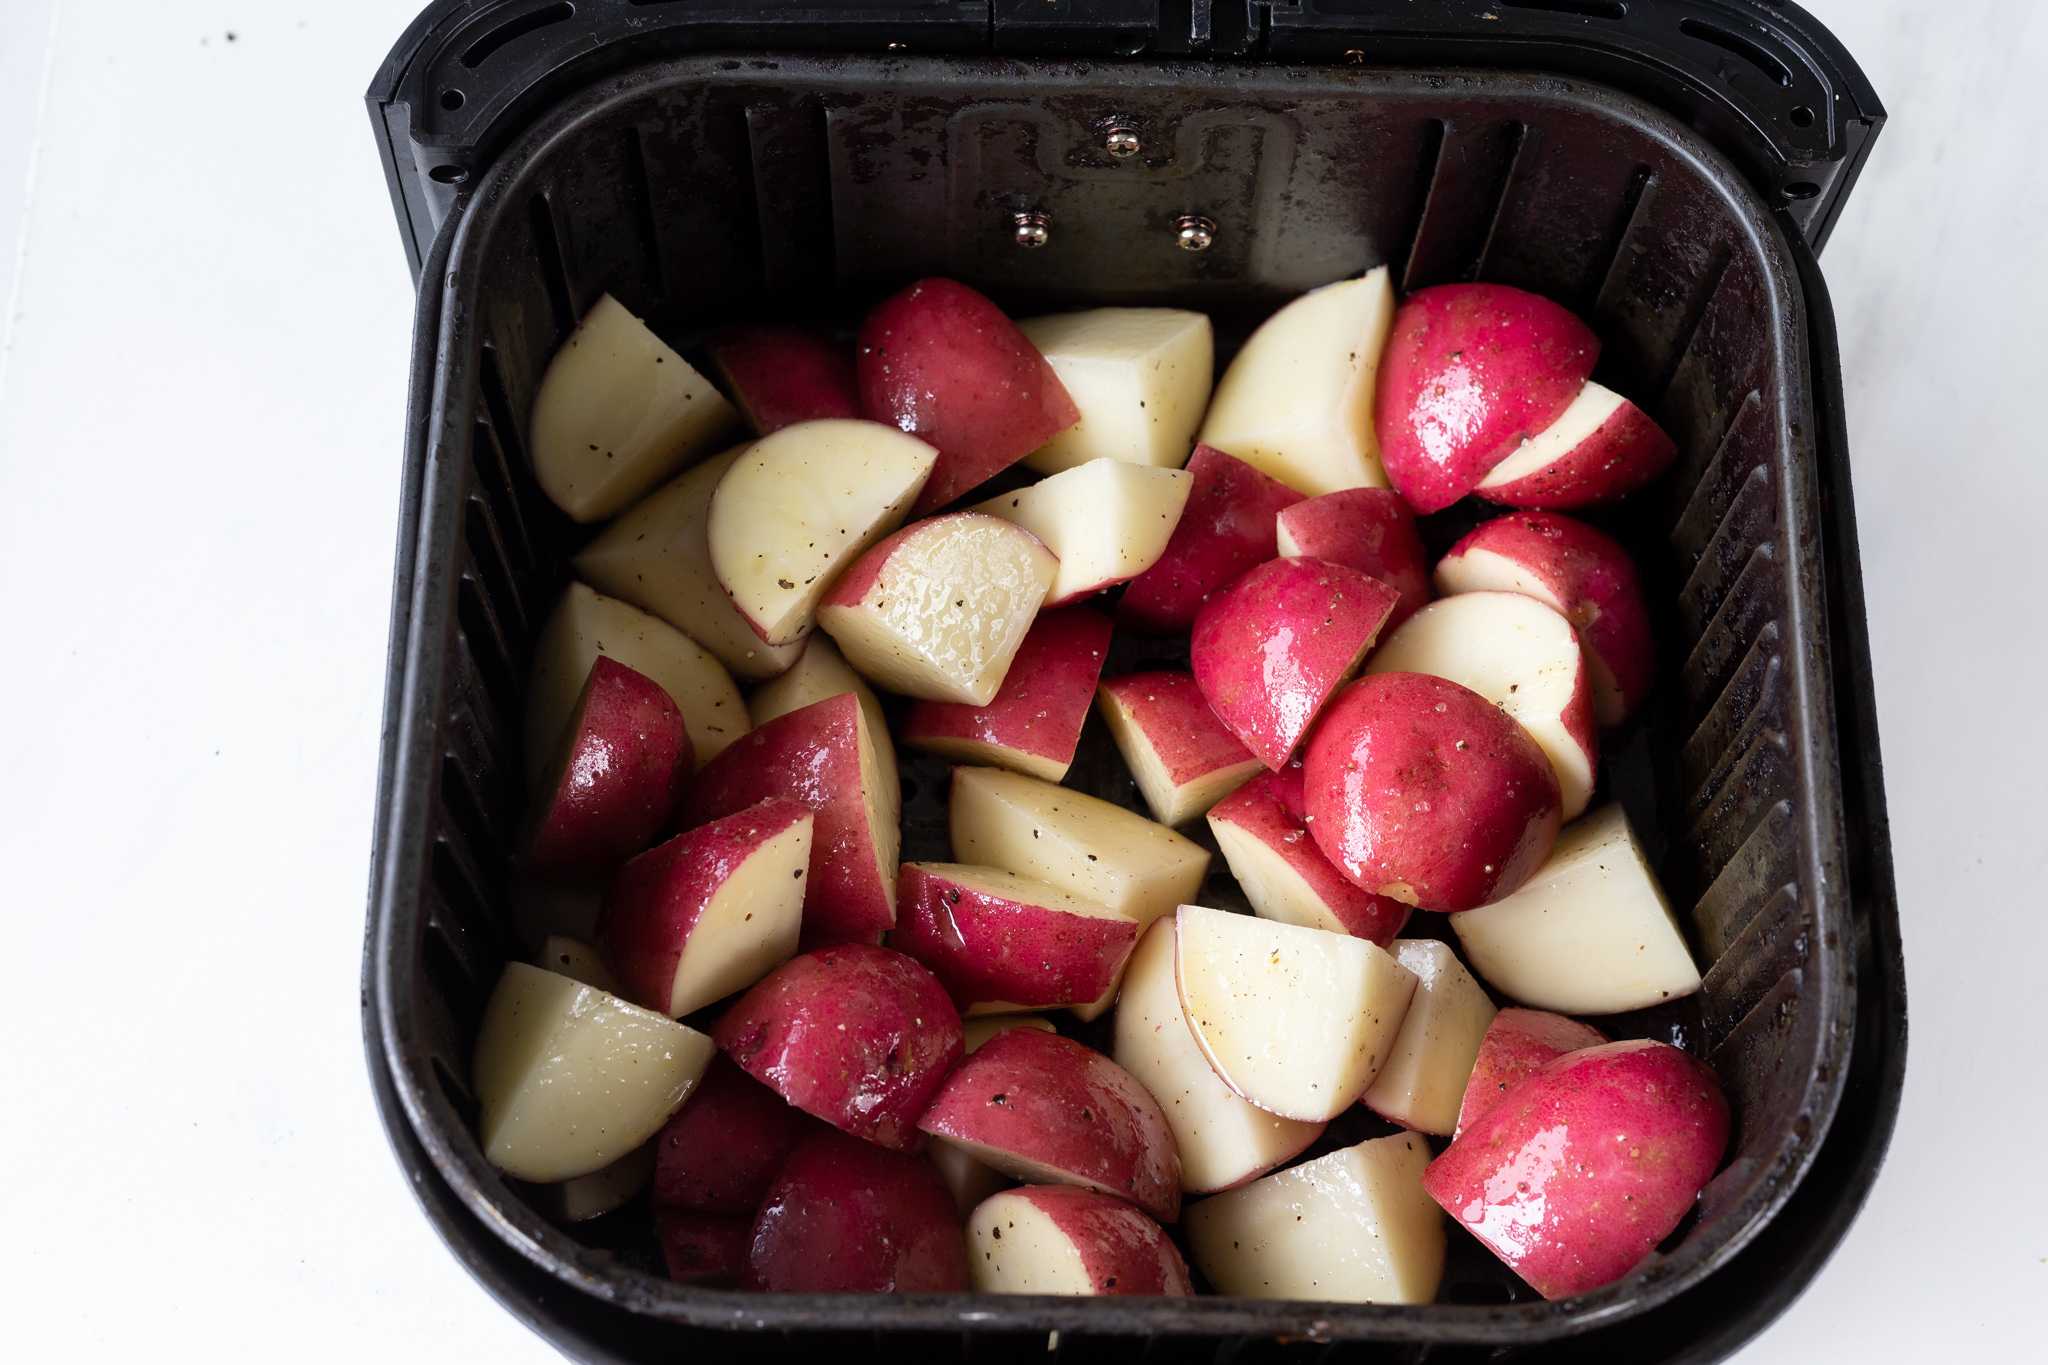 red potatoes in air fryer basket